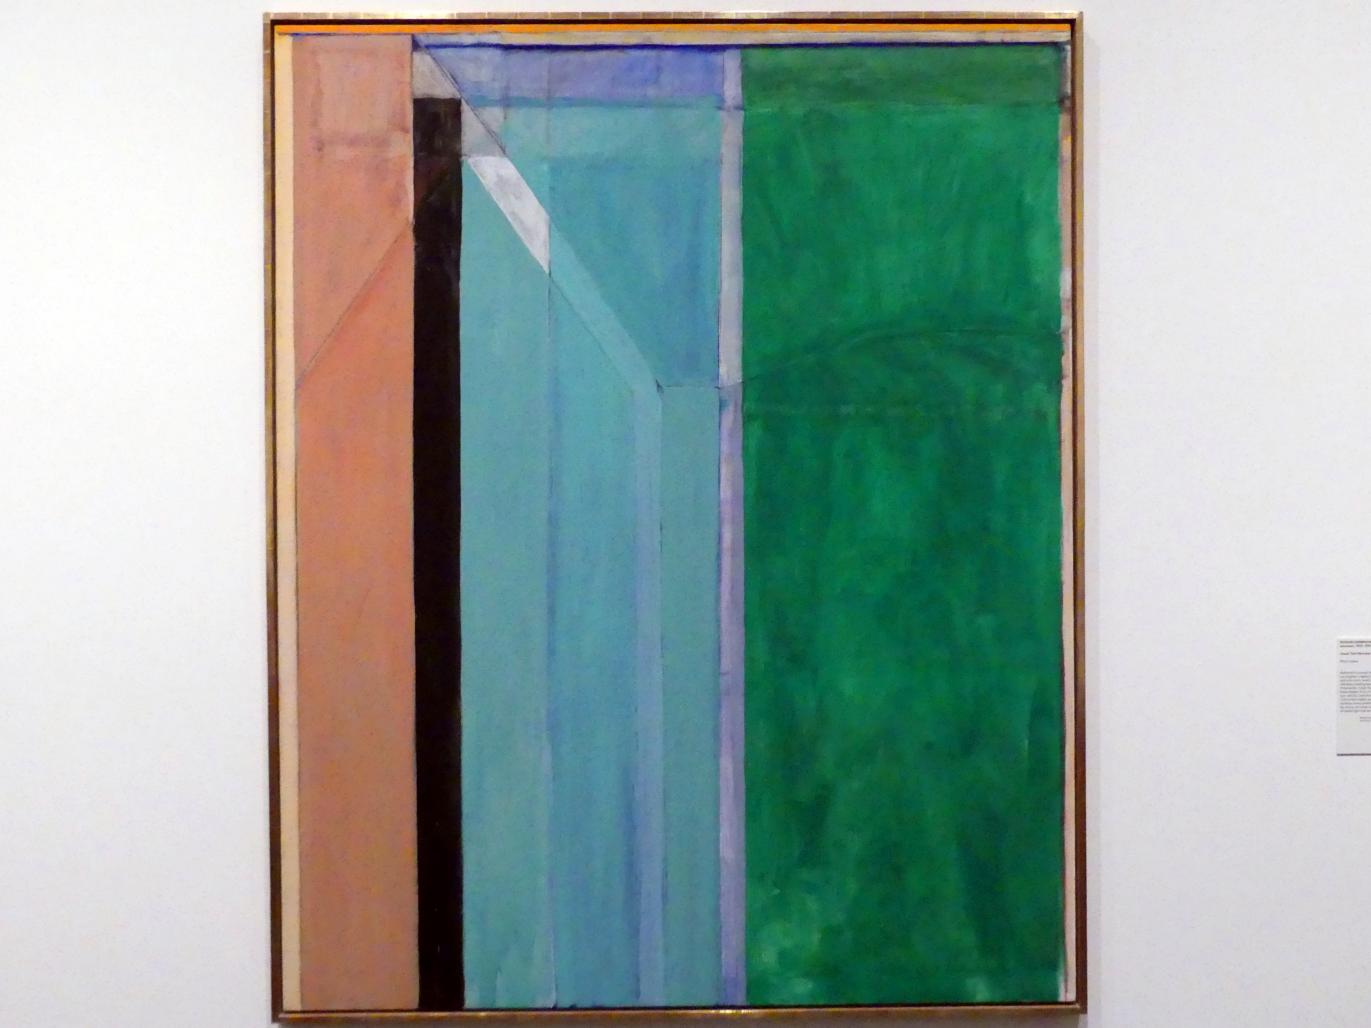 Richard Diebenkorn (1970), Ocean Park (Nummer 30), New York, Metropolitan Museum of Art (Met), Saal 924, 1970